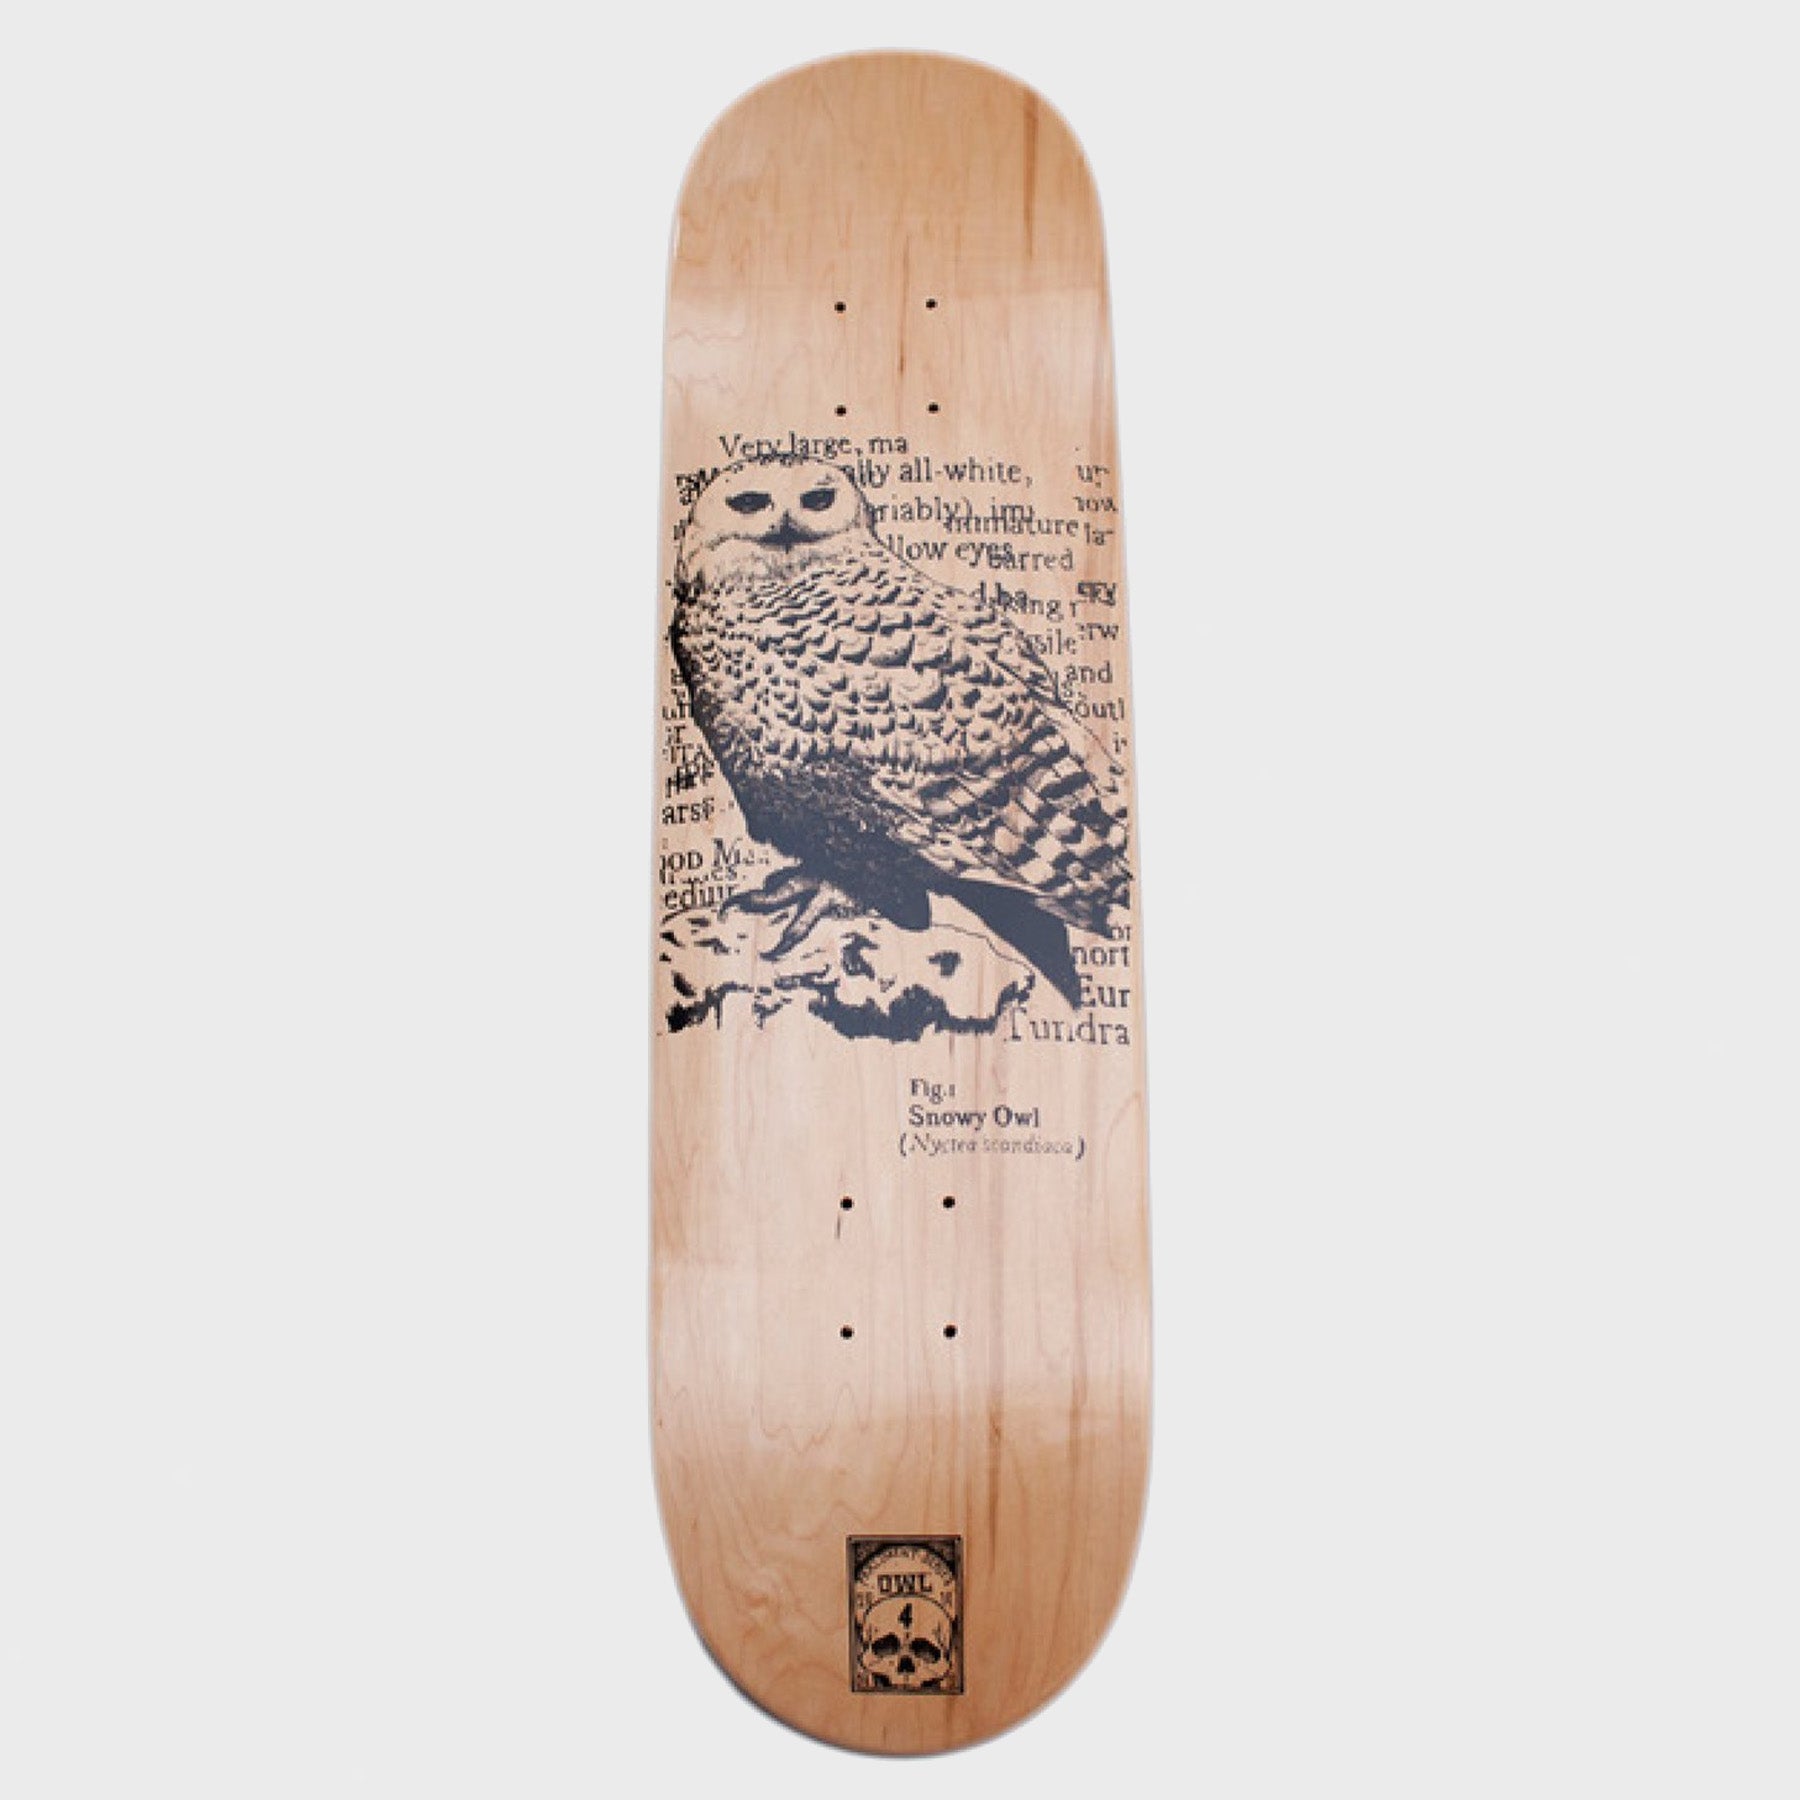 Orwellian World Landscape - 8.25" Snowy Owl Skateboard Deck